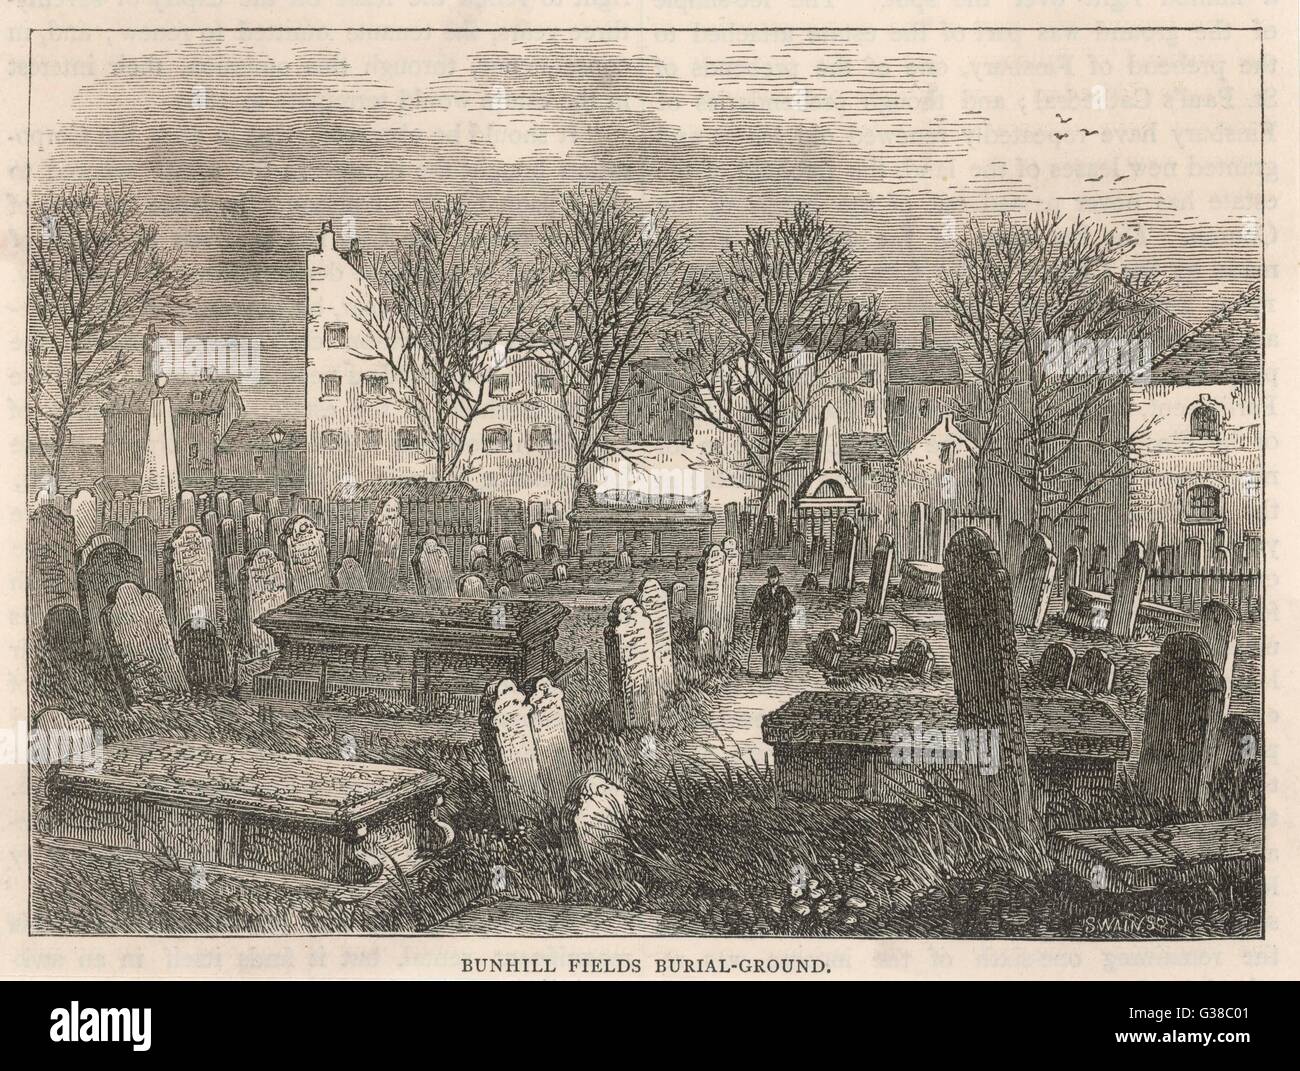 Unübersichtlich Zeilen von Grabsteinen auf Bunhill Fields Begräbnis-Ground, London Stockfoto